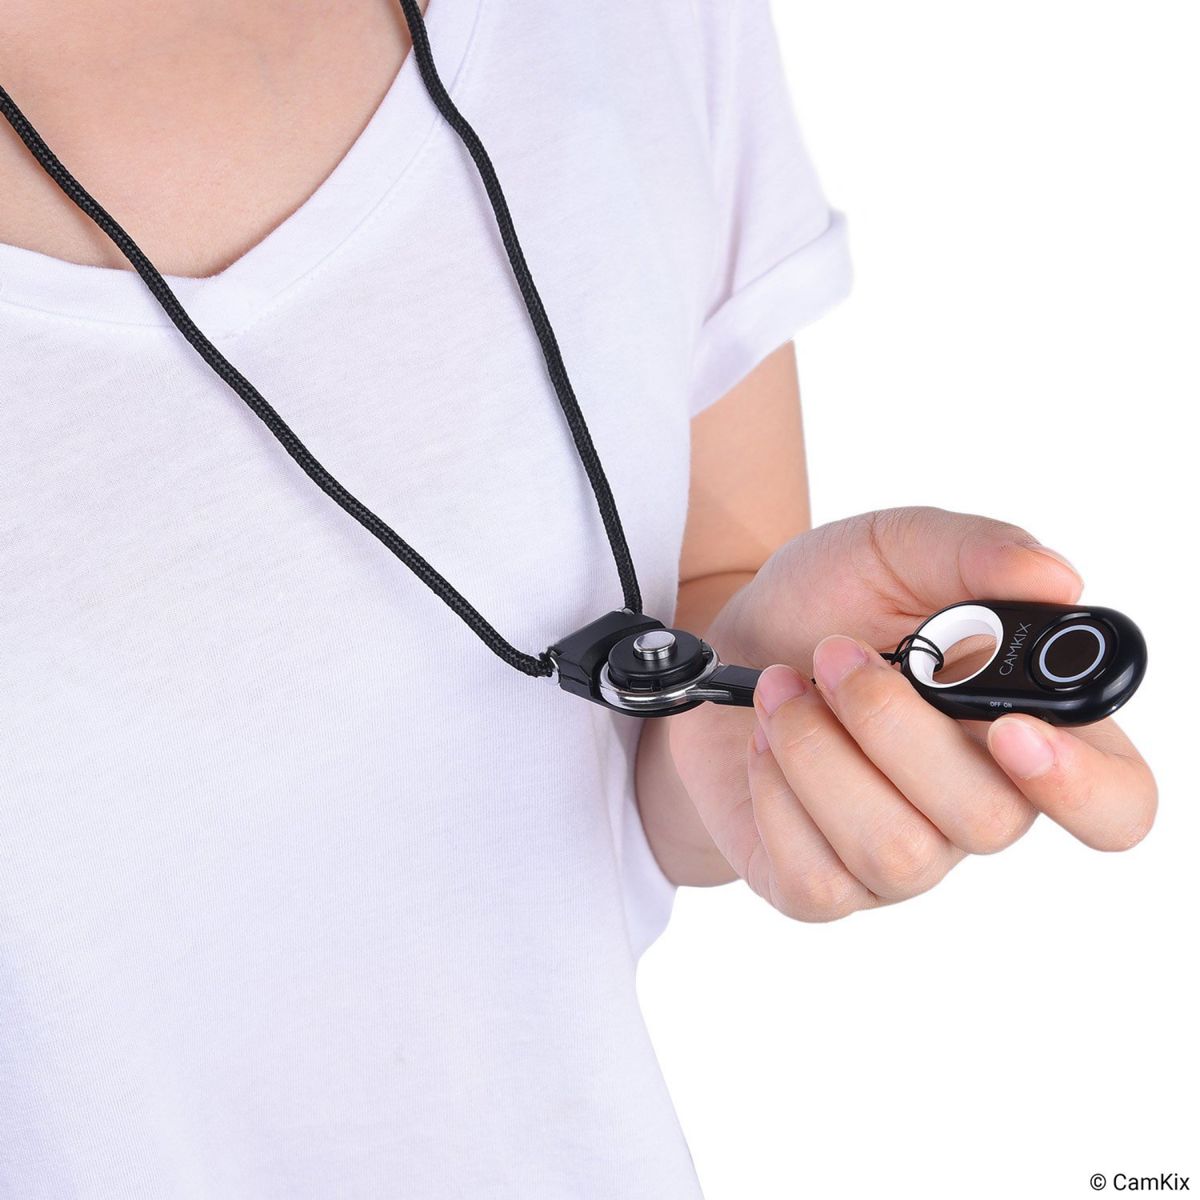 カメラシャッターリモコン Bluetoothワイヤレステクノロジー Bluetoothワイヤレス 取り外し可能なリングマウント